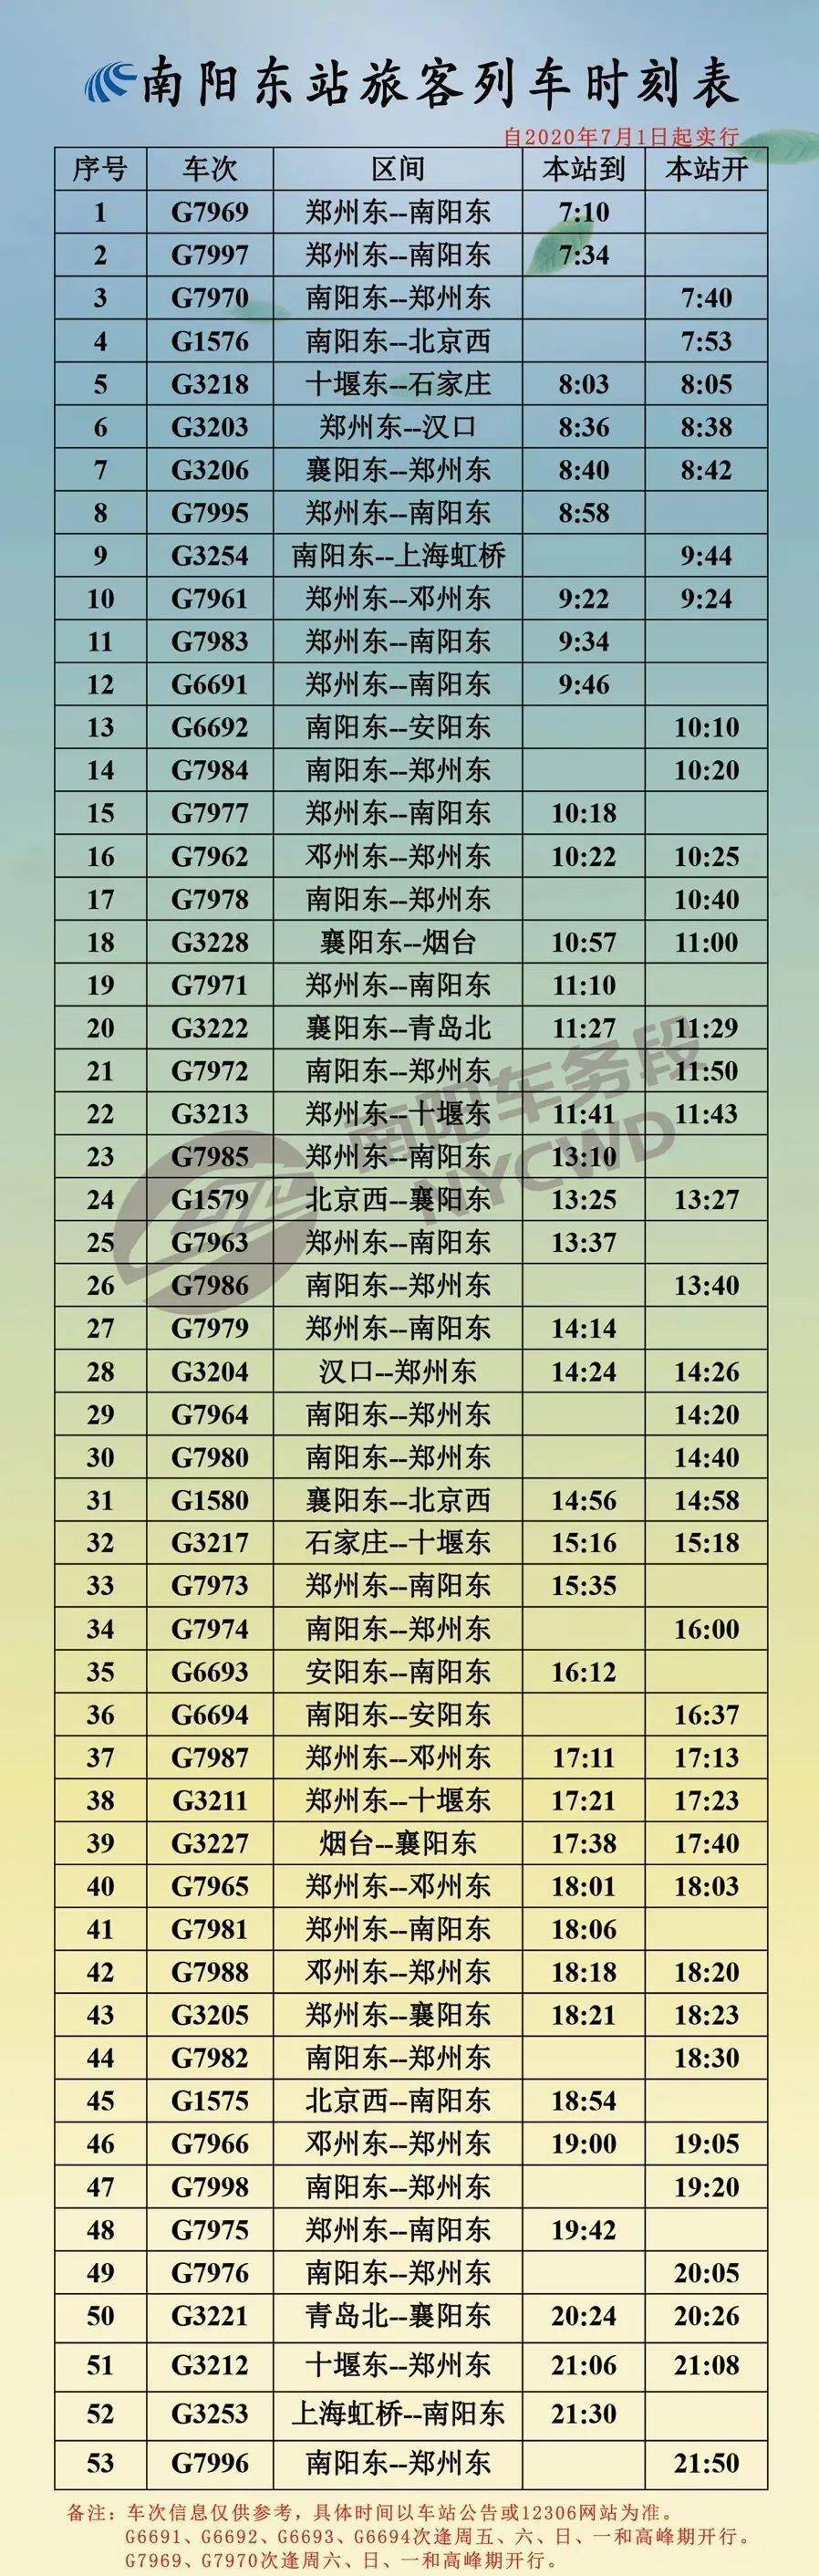 【收藏】7月1日铁路调图 南阳各高铁和普通列车时刻表